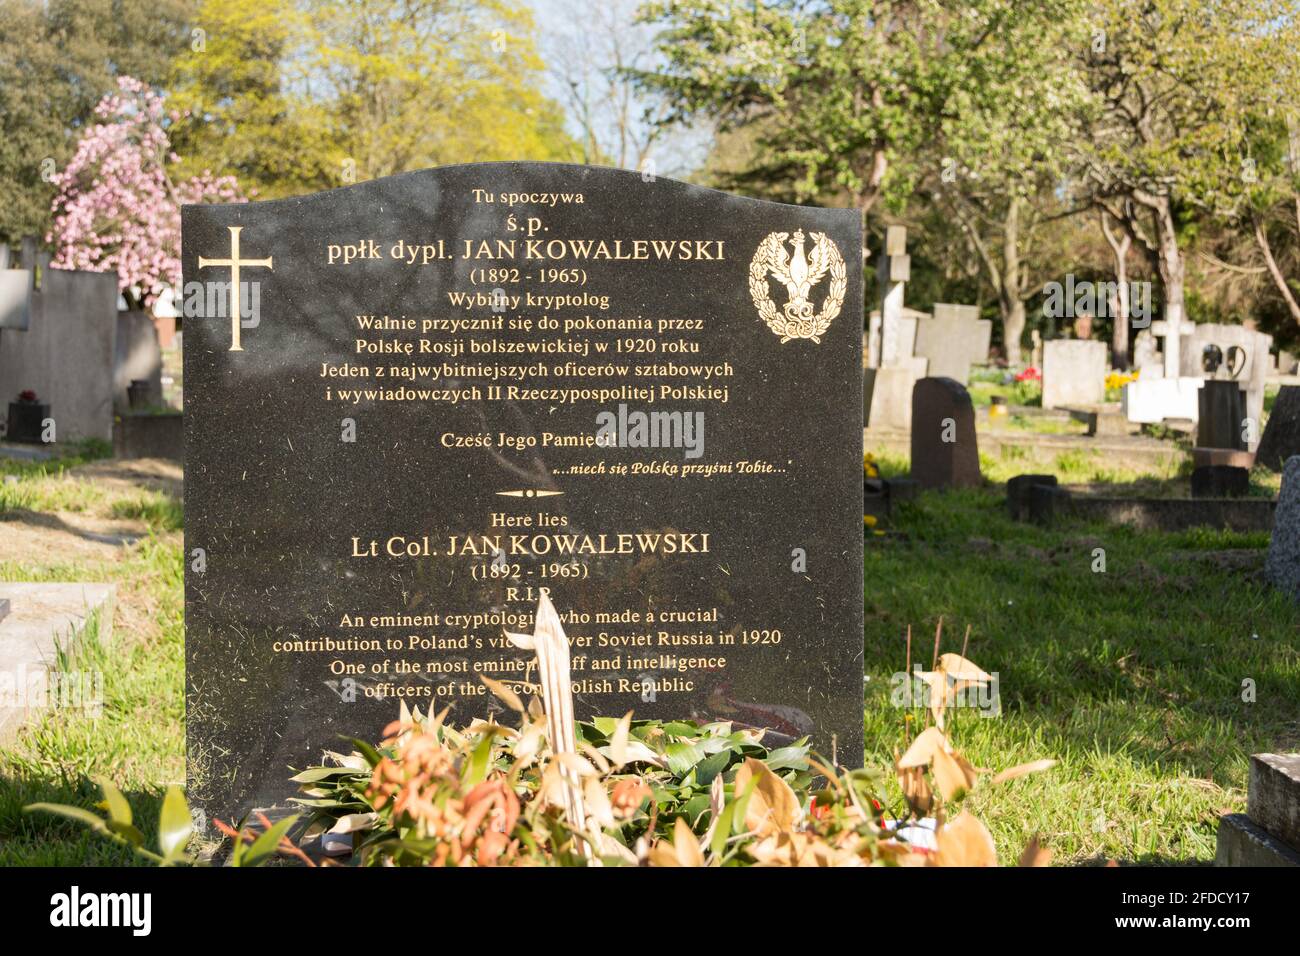 La tombe du Lt Coll. Jan Kowalewski, un éminent cryptologue polonais, dans le cimetière de North Sheen, Mortlake, Londres, Royaume-Uni Banque D'Images